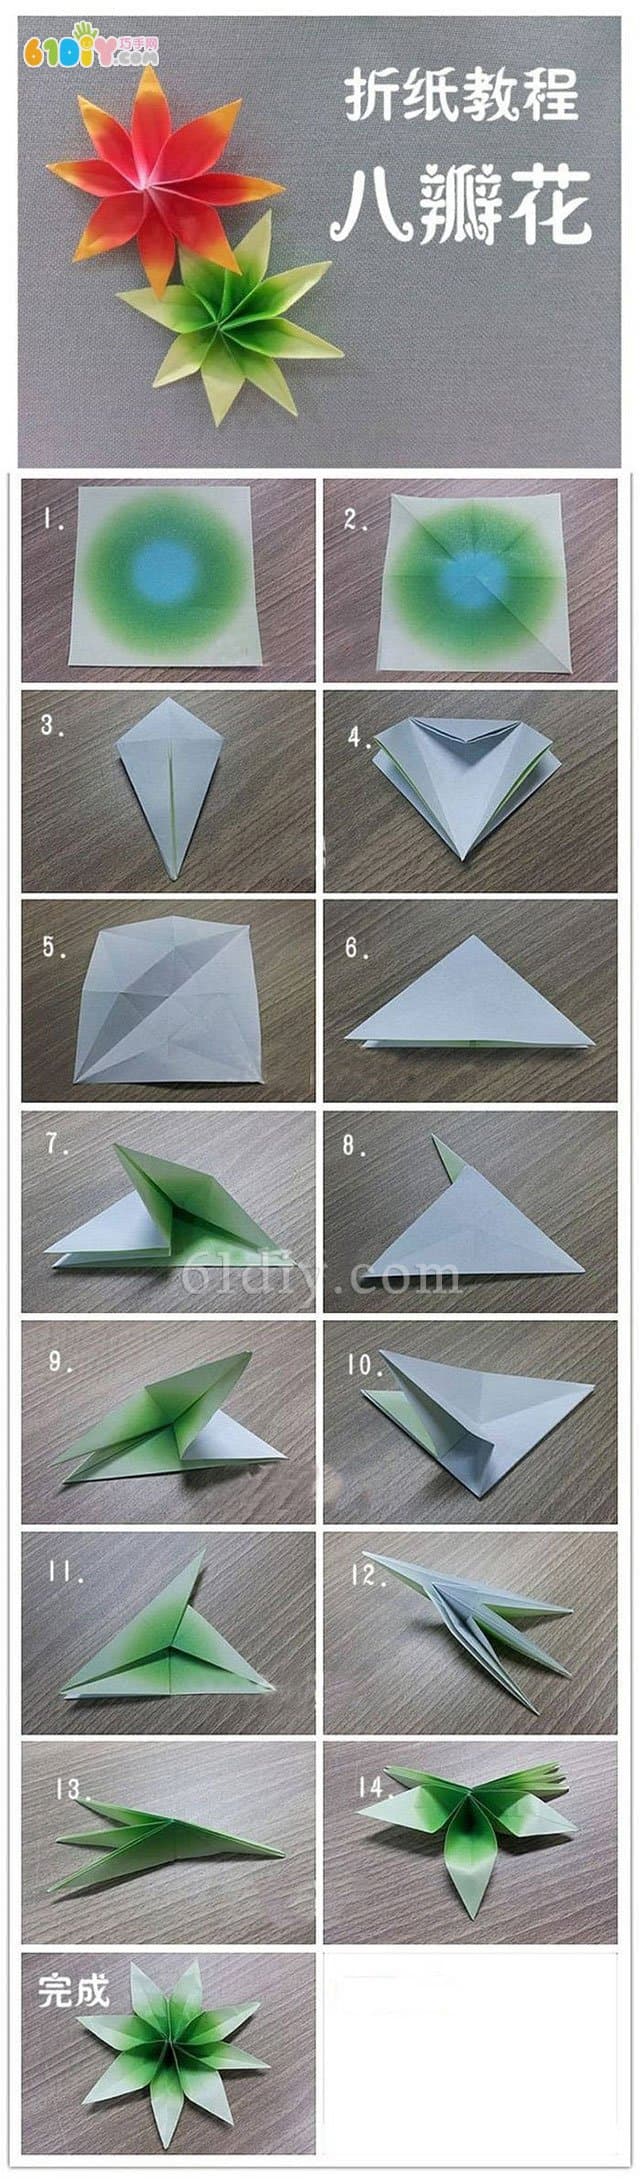 八瓣花折纸教程